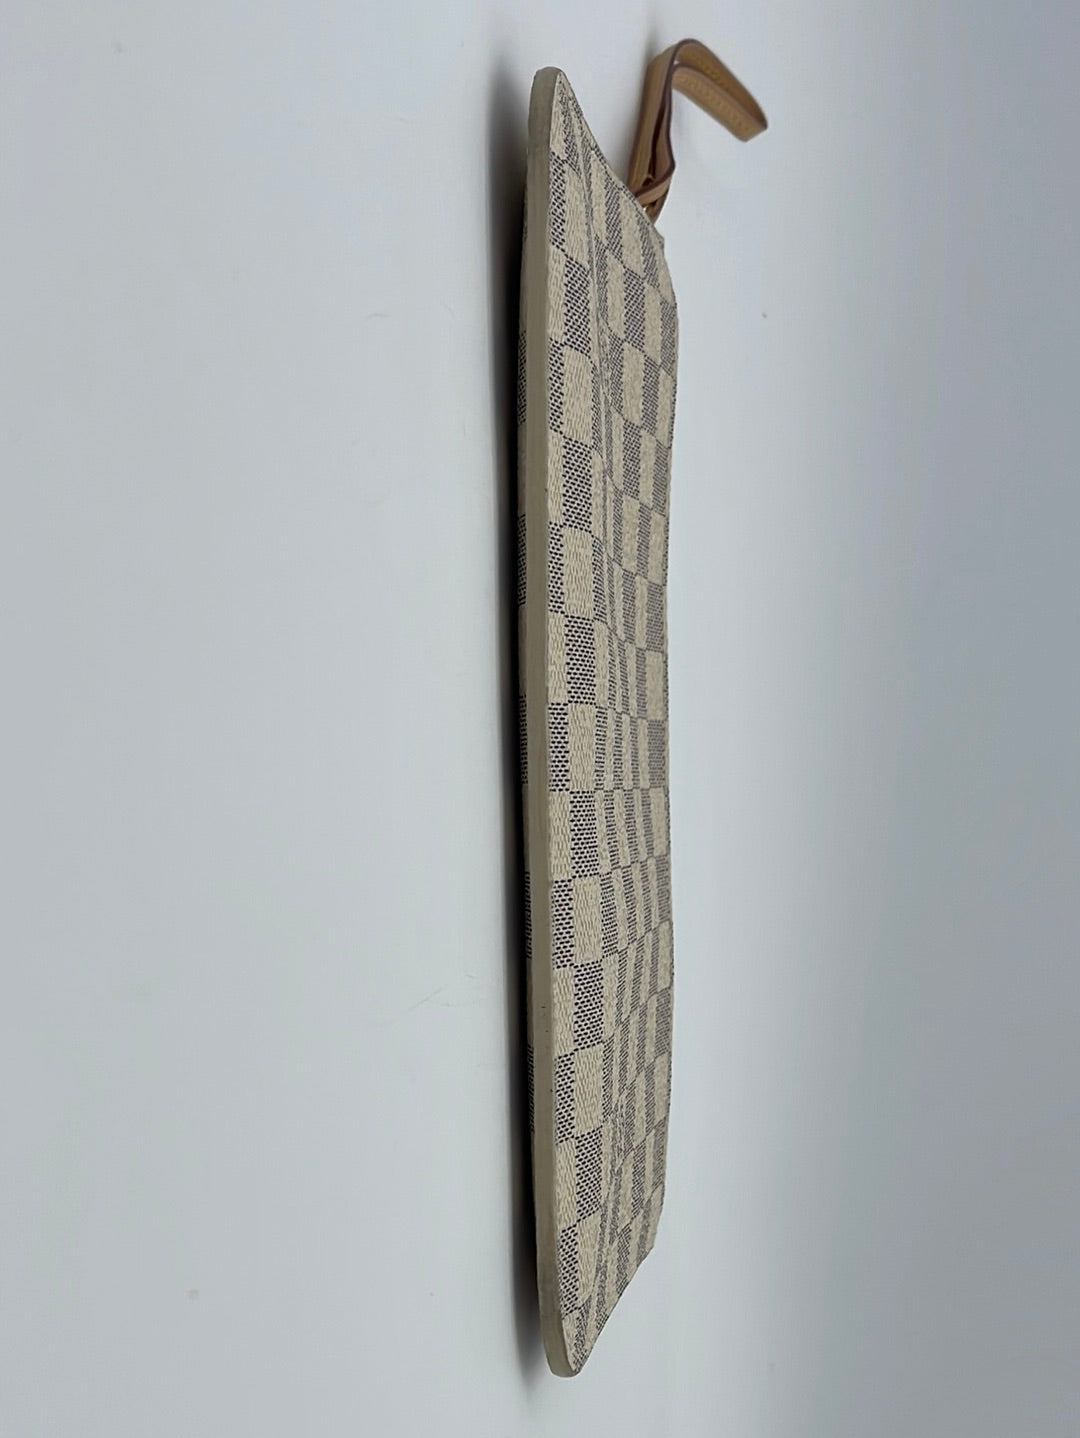 Louis Vuitton Azur Neverfull Wristlet – Closet Connection Resale